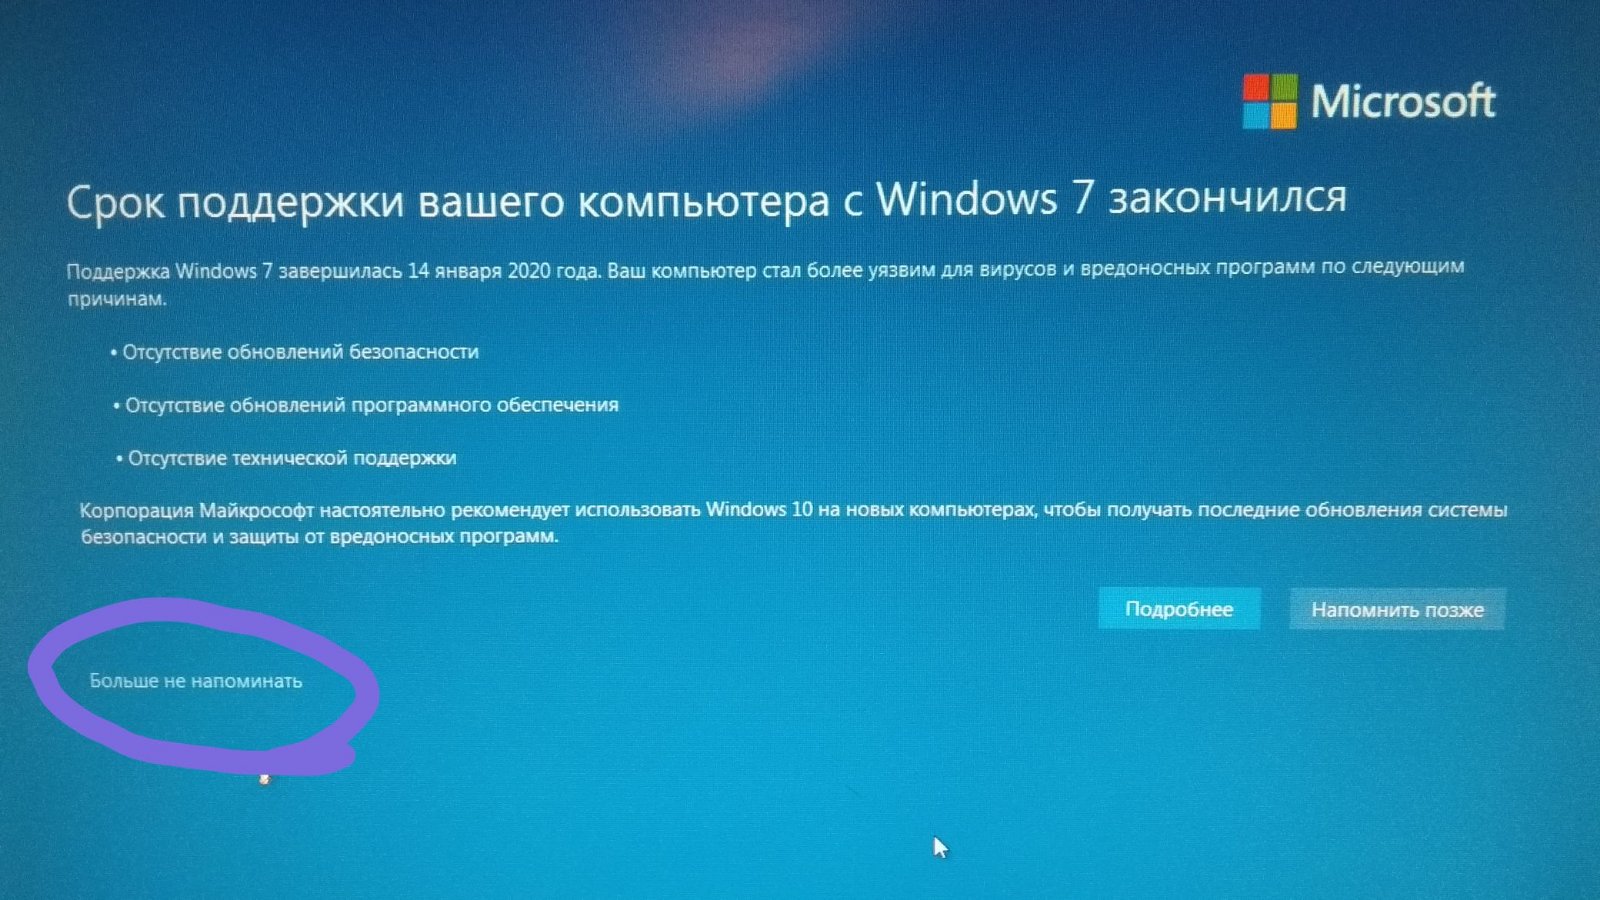 Ваш компьютер свободен. Поддержка Windows. Поддержка Windows 10. Закончилась поддержка Windows 7. Прекращена поддержка Windows XP.